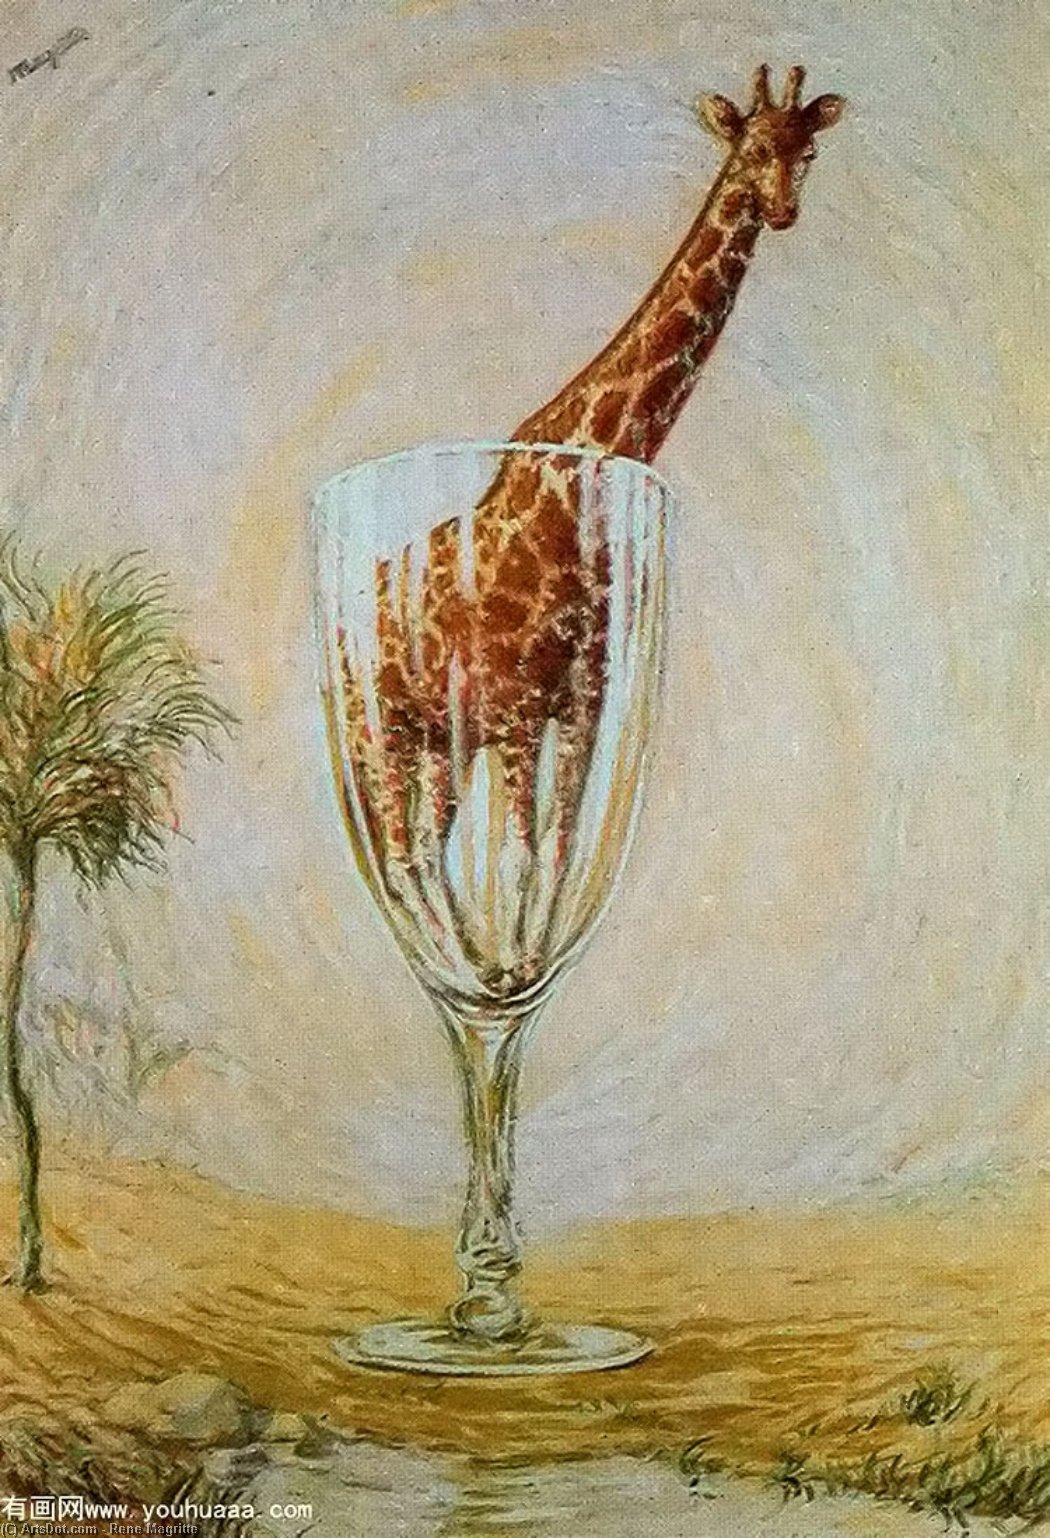 WikiOO.org - Εγκυκλοπαίδεια Καλών Τεχνών - Ζωγραφική, έργα τέχνης Rene Magritte - The cut-glass bath